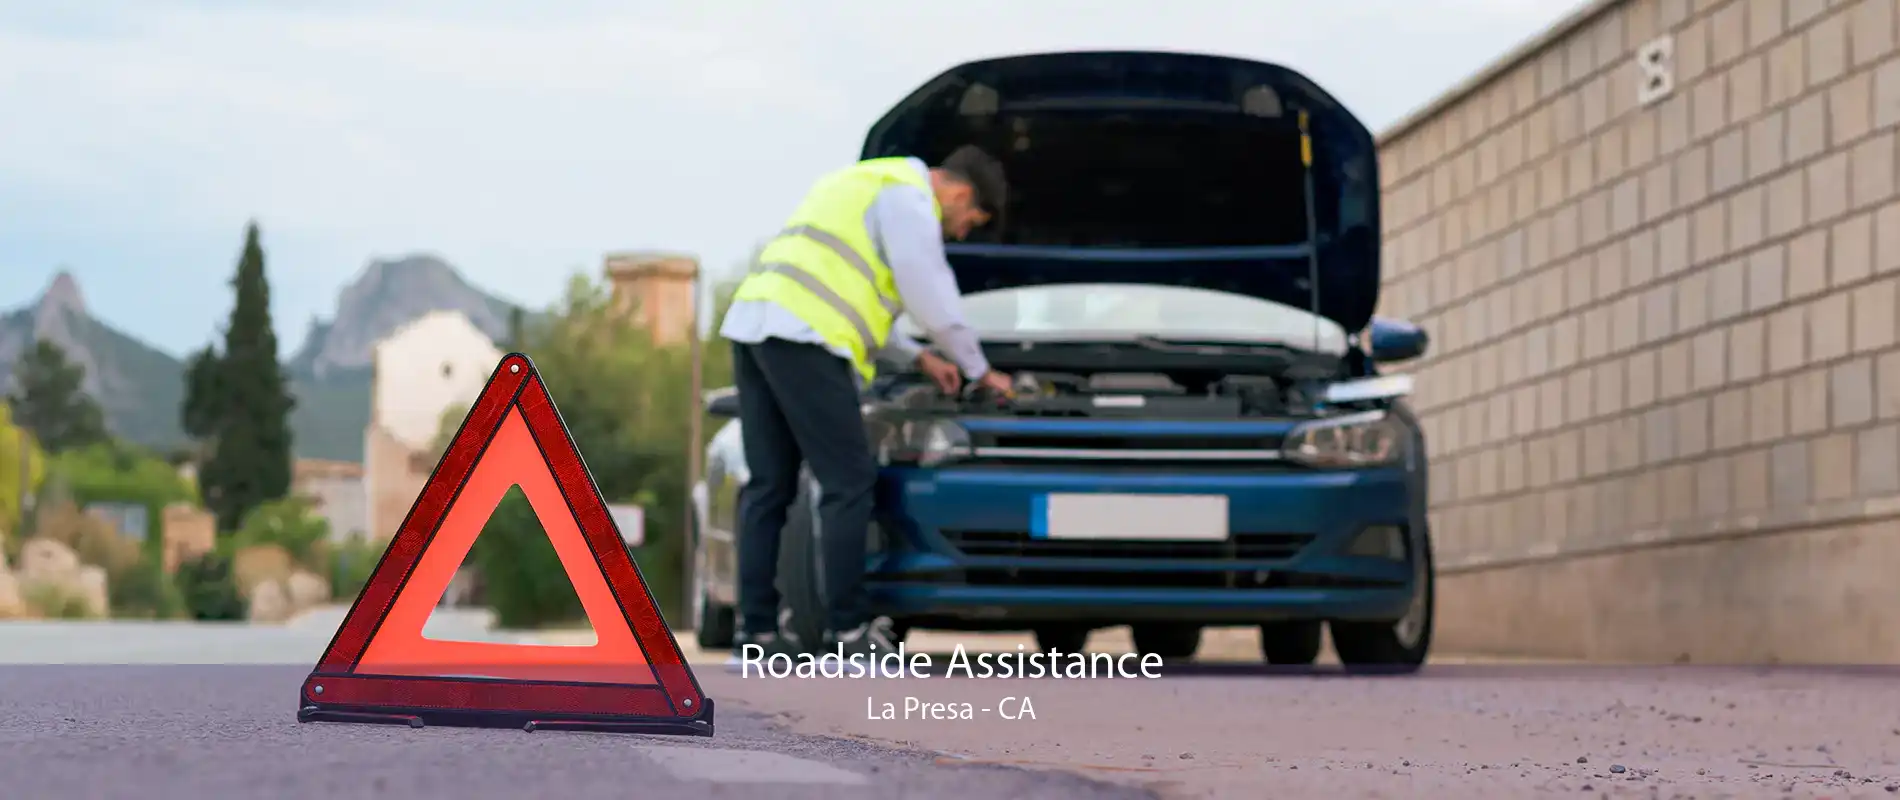 Roadside Assistance La Presa - CA